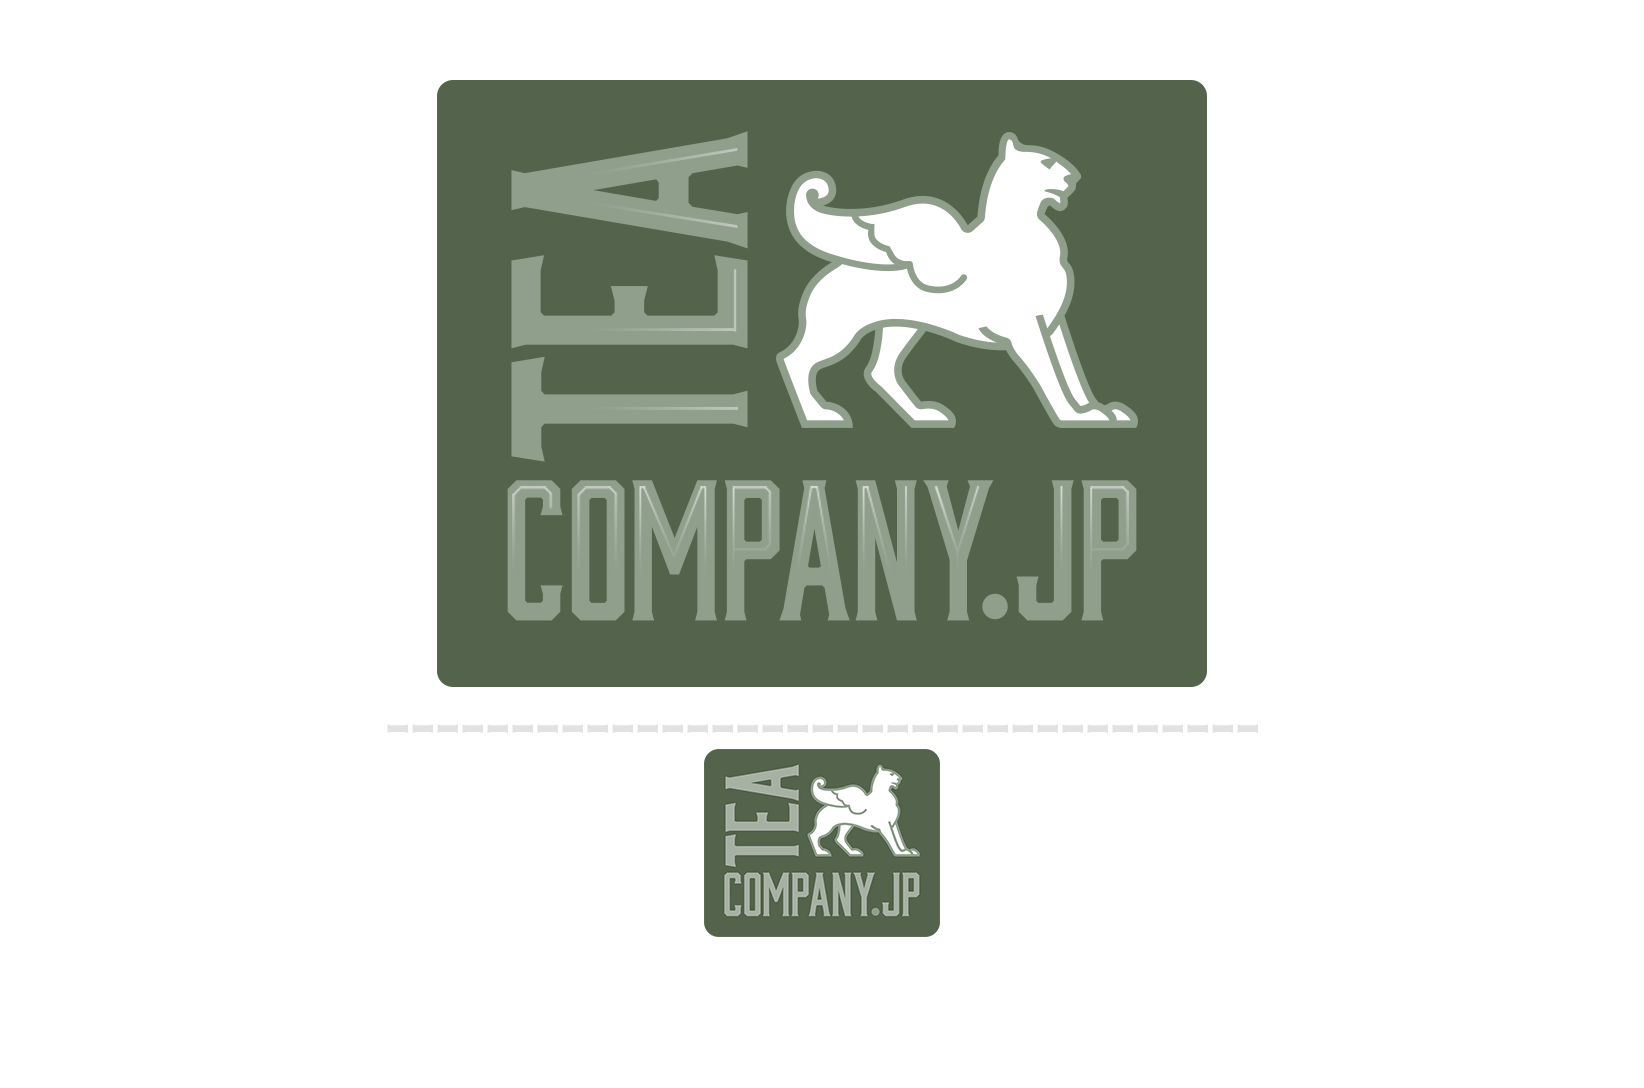 Tea Company Logotype